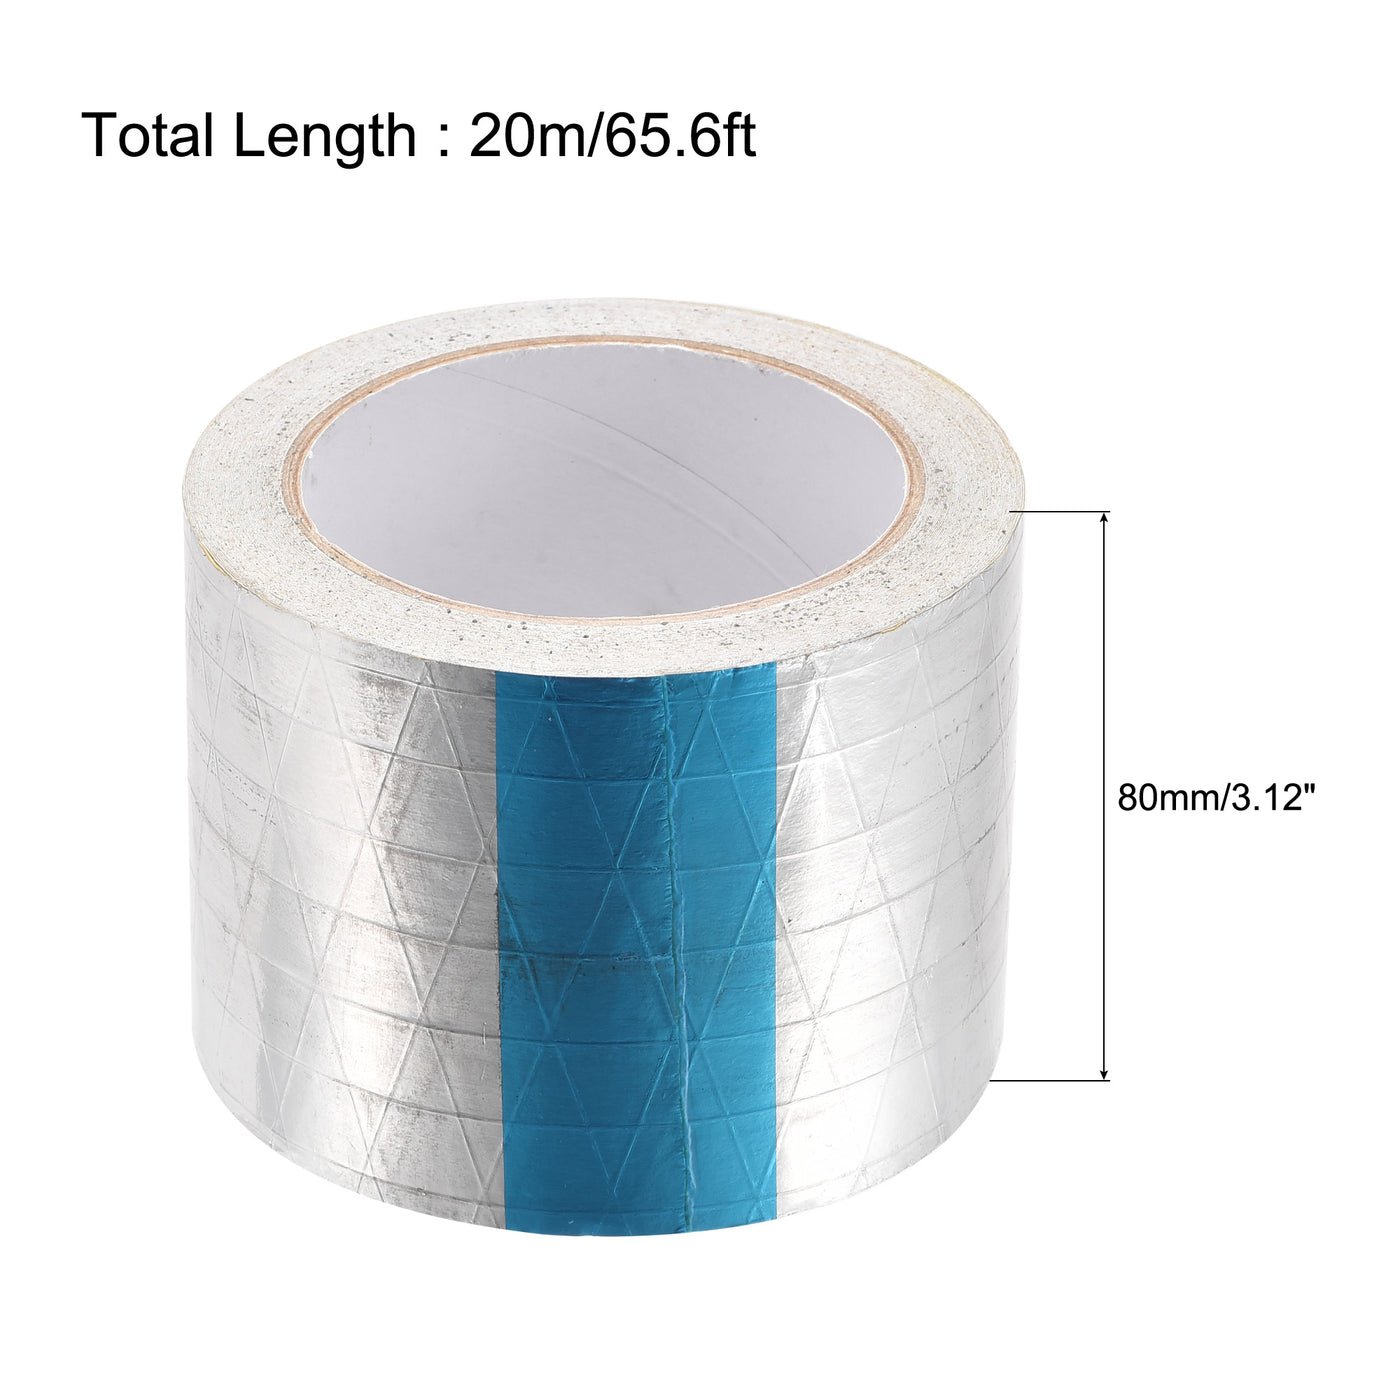 uxcell Uxcell Fiberglass Aluminum Foil Tape High Temperature Tape 80mmx20m/65ft